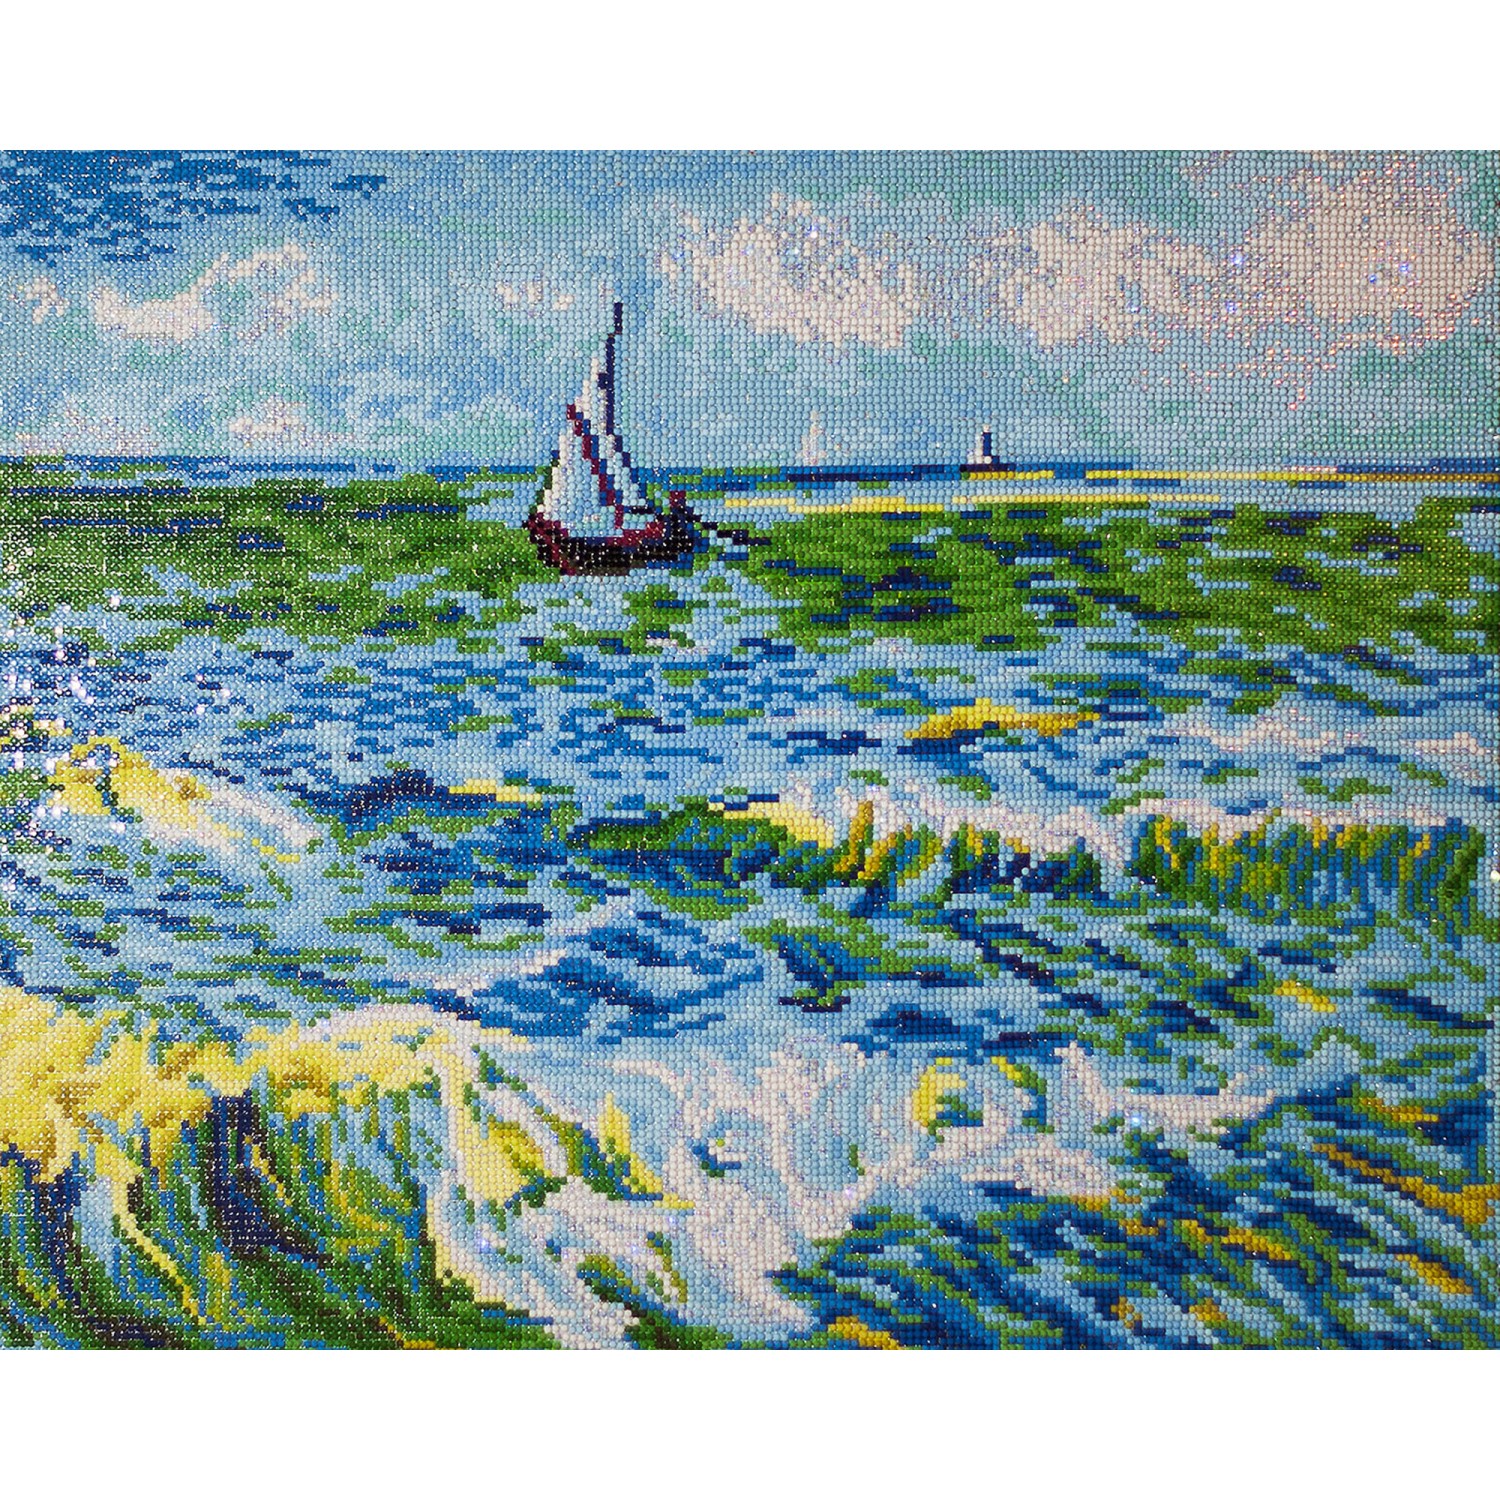 Diamond Dotz Fishing in Spring (Van Gogh)